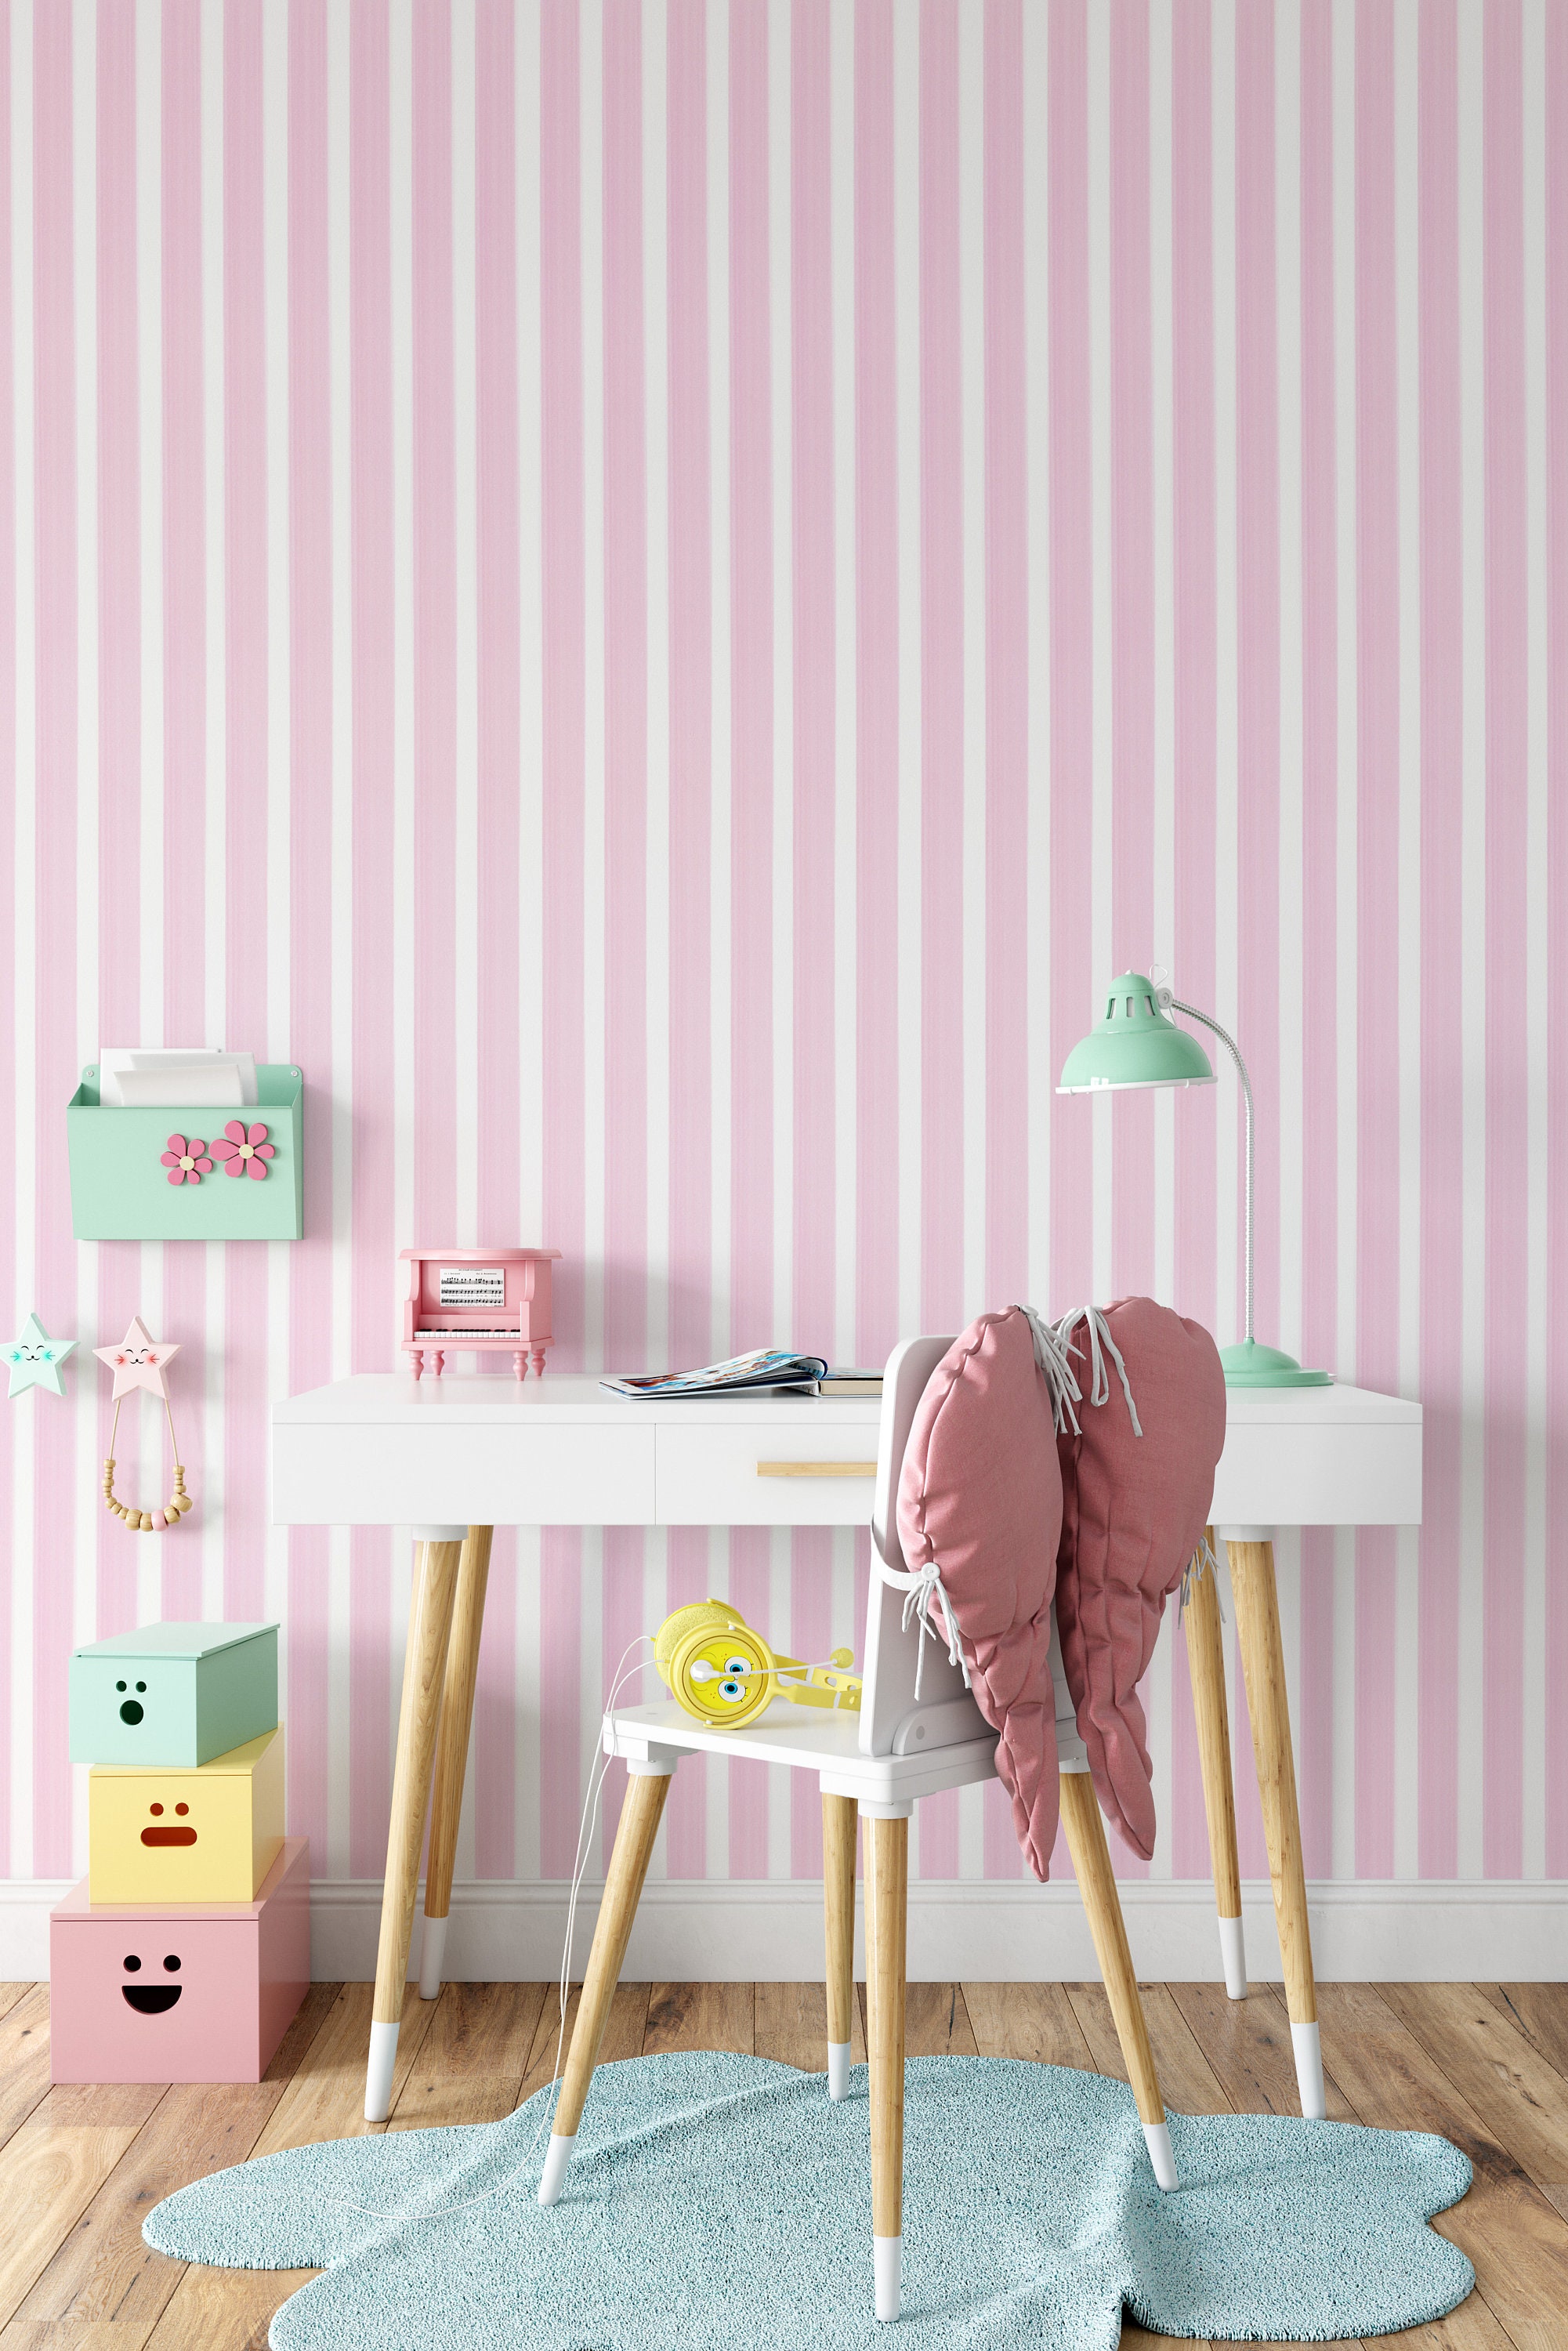 Papel pintado rayas beige y rosa, elegante con acento romántico